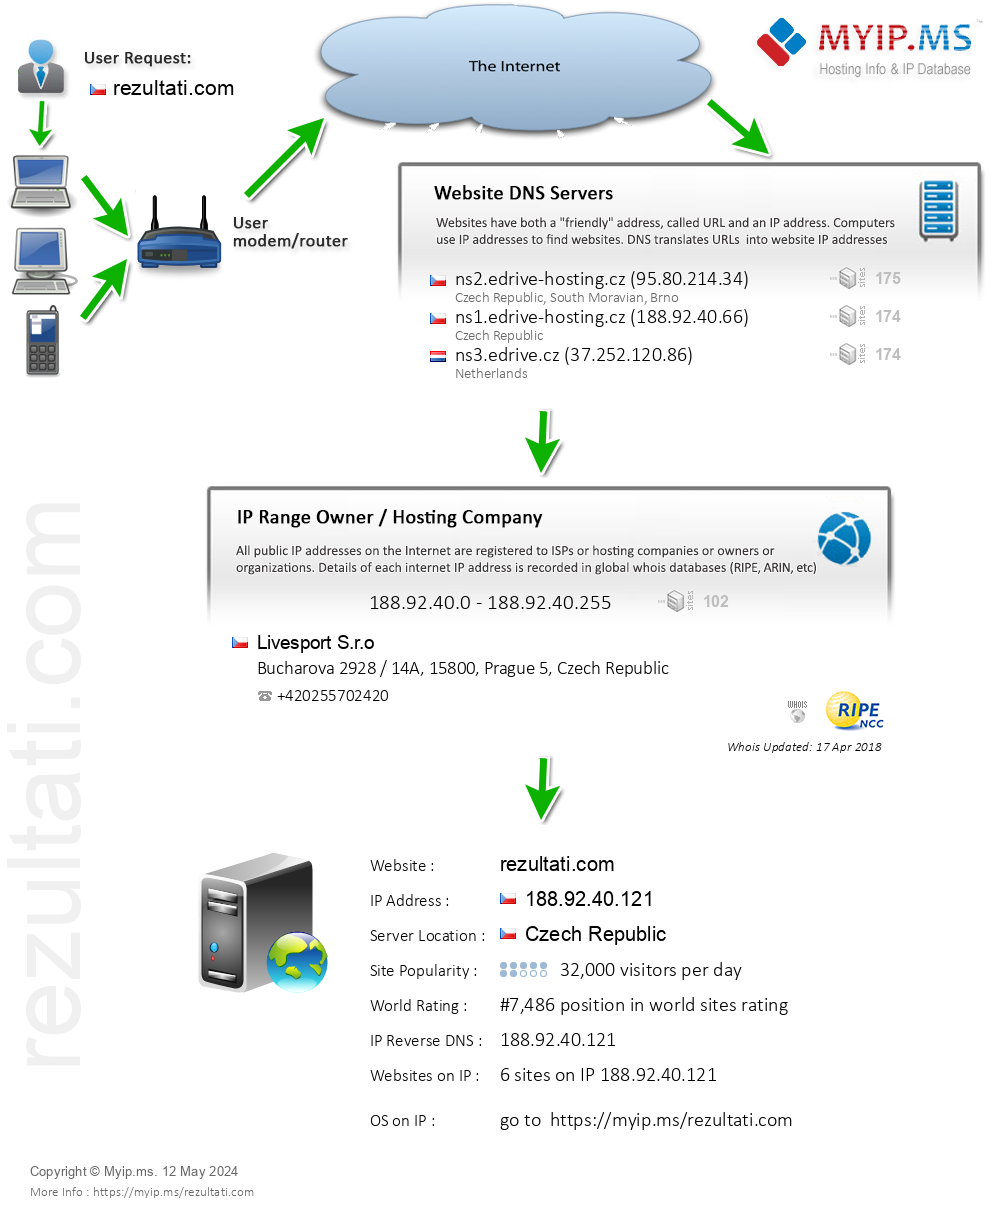 Rezultati.com - Website Hosting Visual IP Diagram